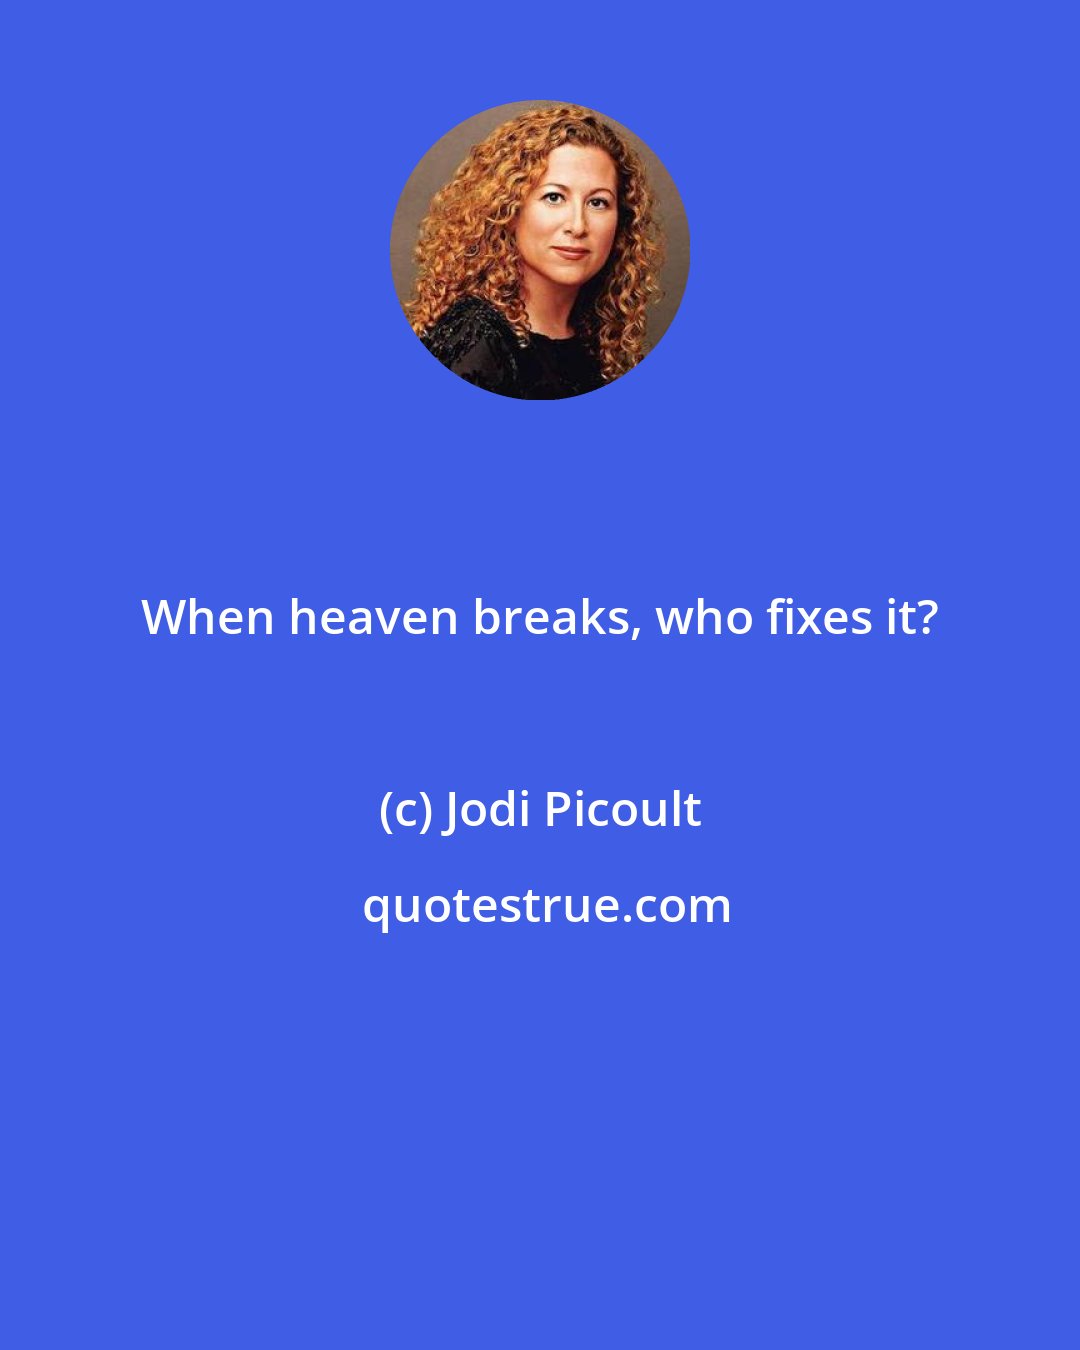 Jodi Picoult: When heaven breaks, who fixes it?